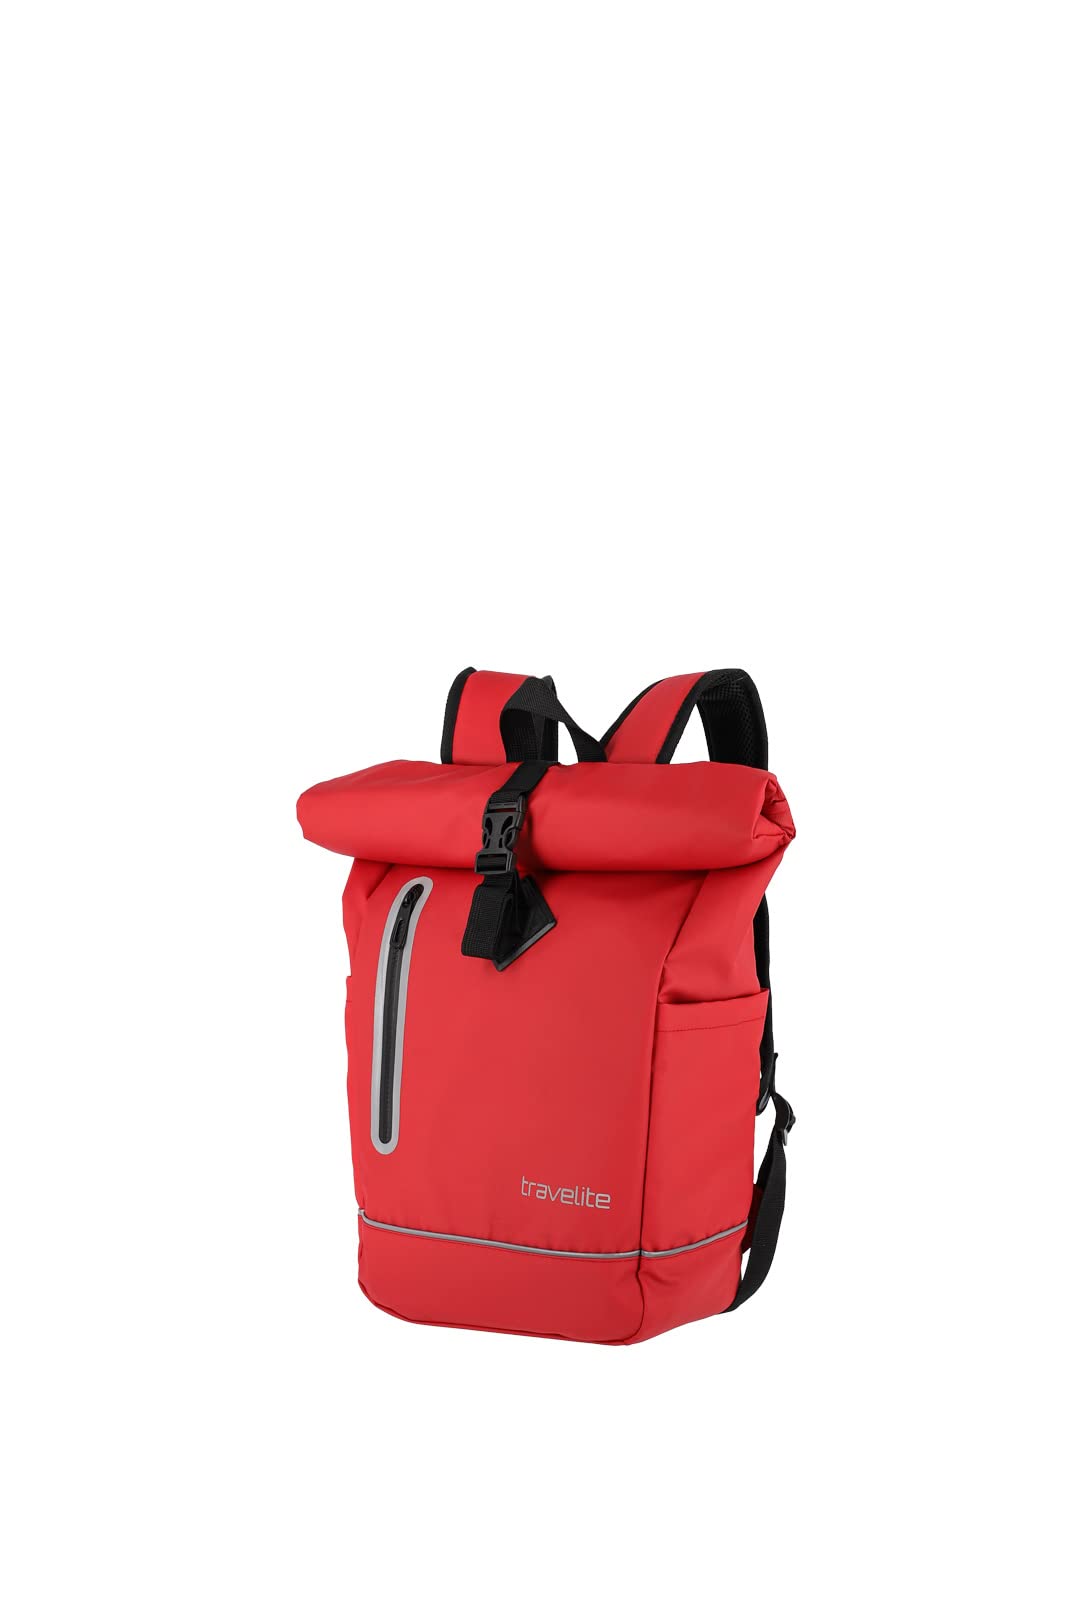 travelite BASICS Rucksack aus wasserfestem Material, Schulrucksack aus Polyester mit Reflektoren + Roll-Up Verschluss, 400g, 48 cm, 19 Liter